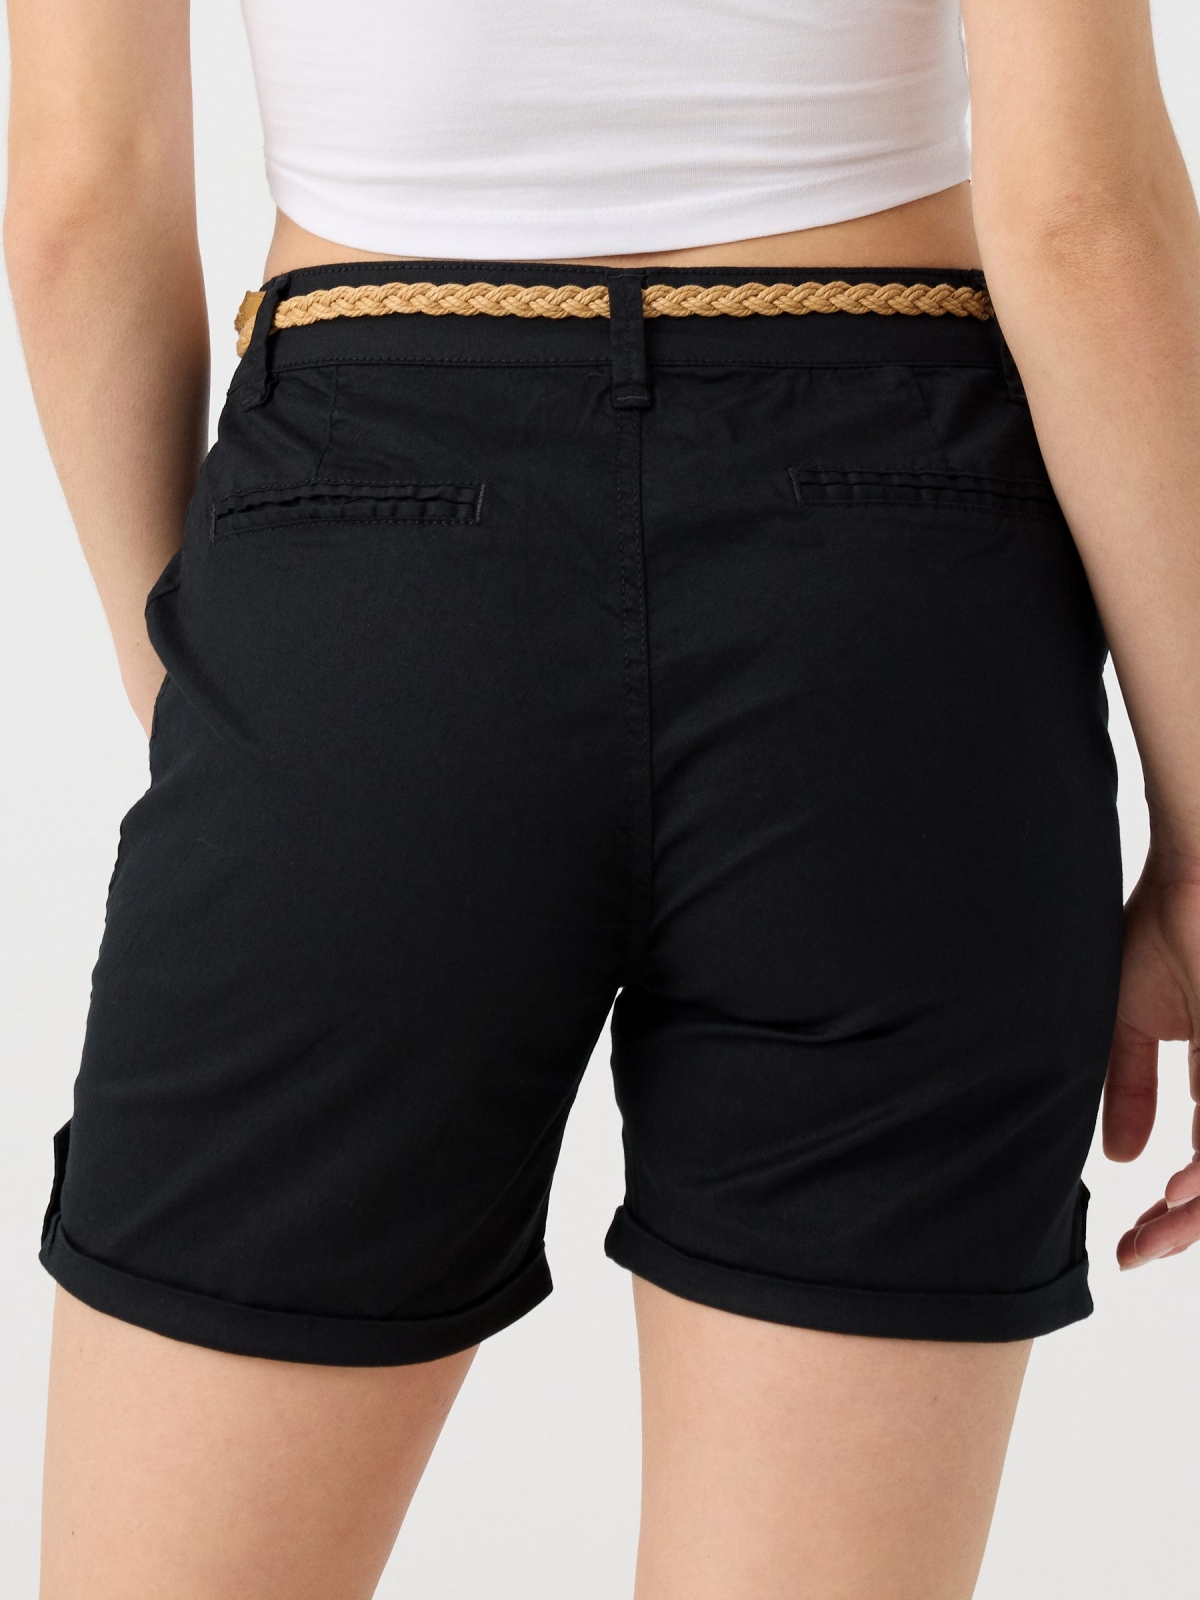 Shorts com cinto trançado preto vista detalhe